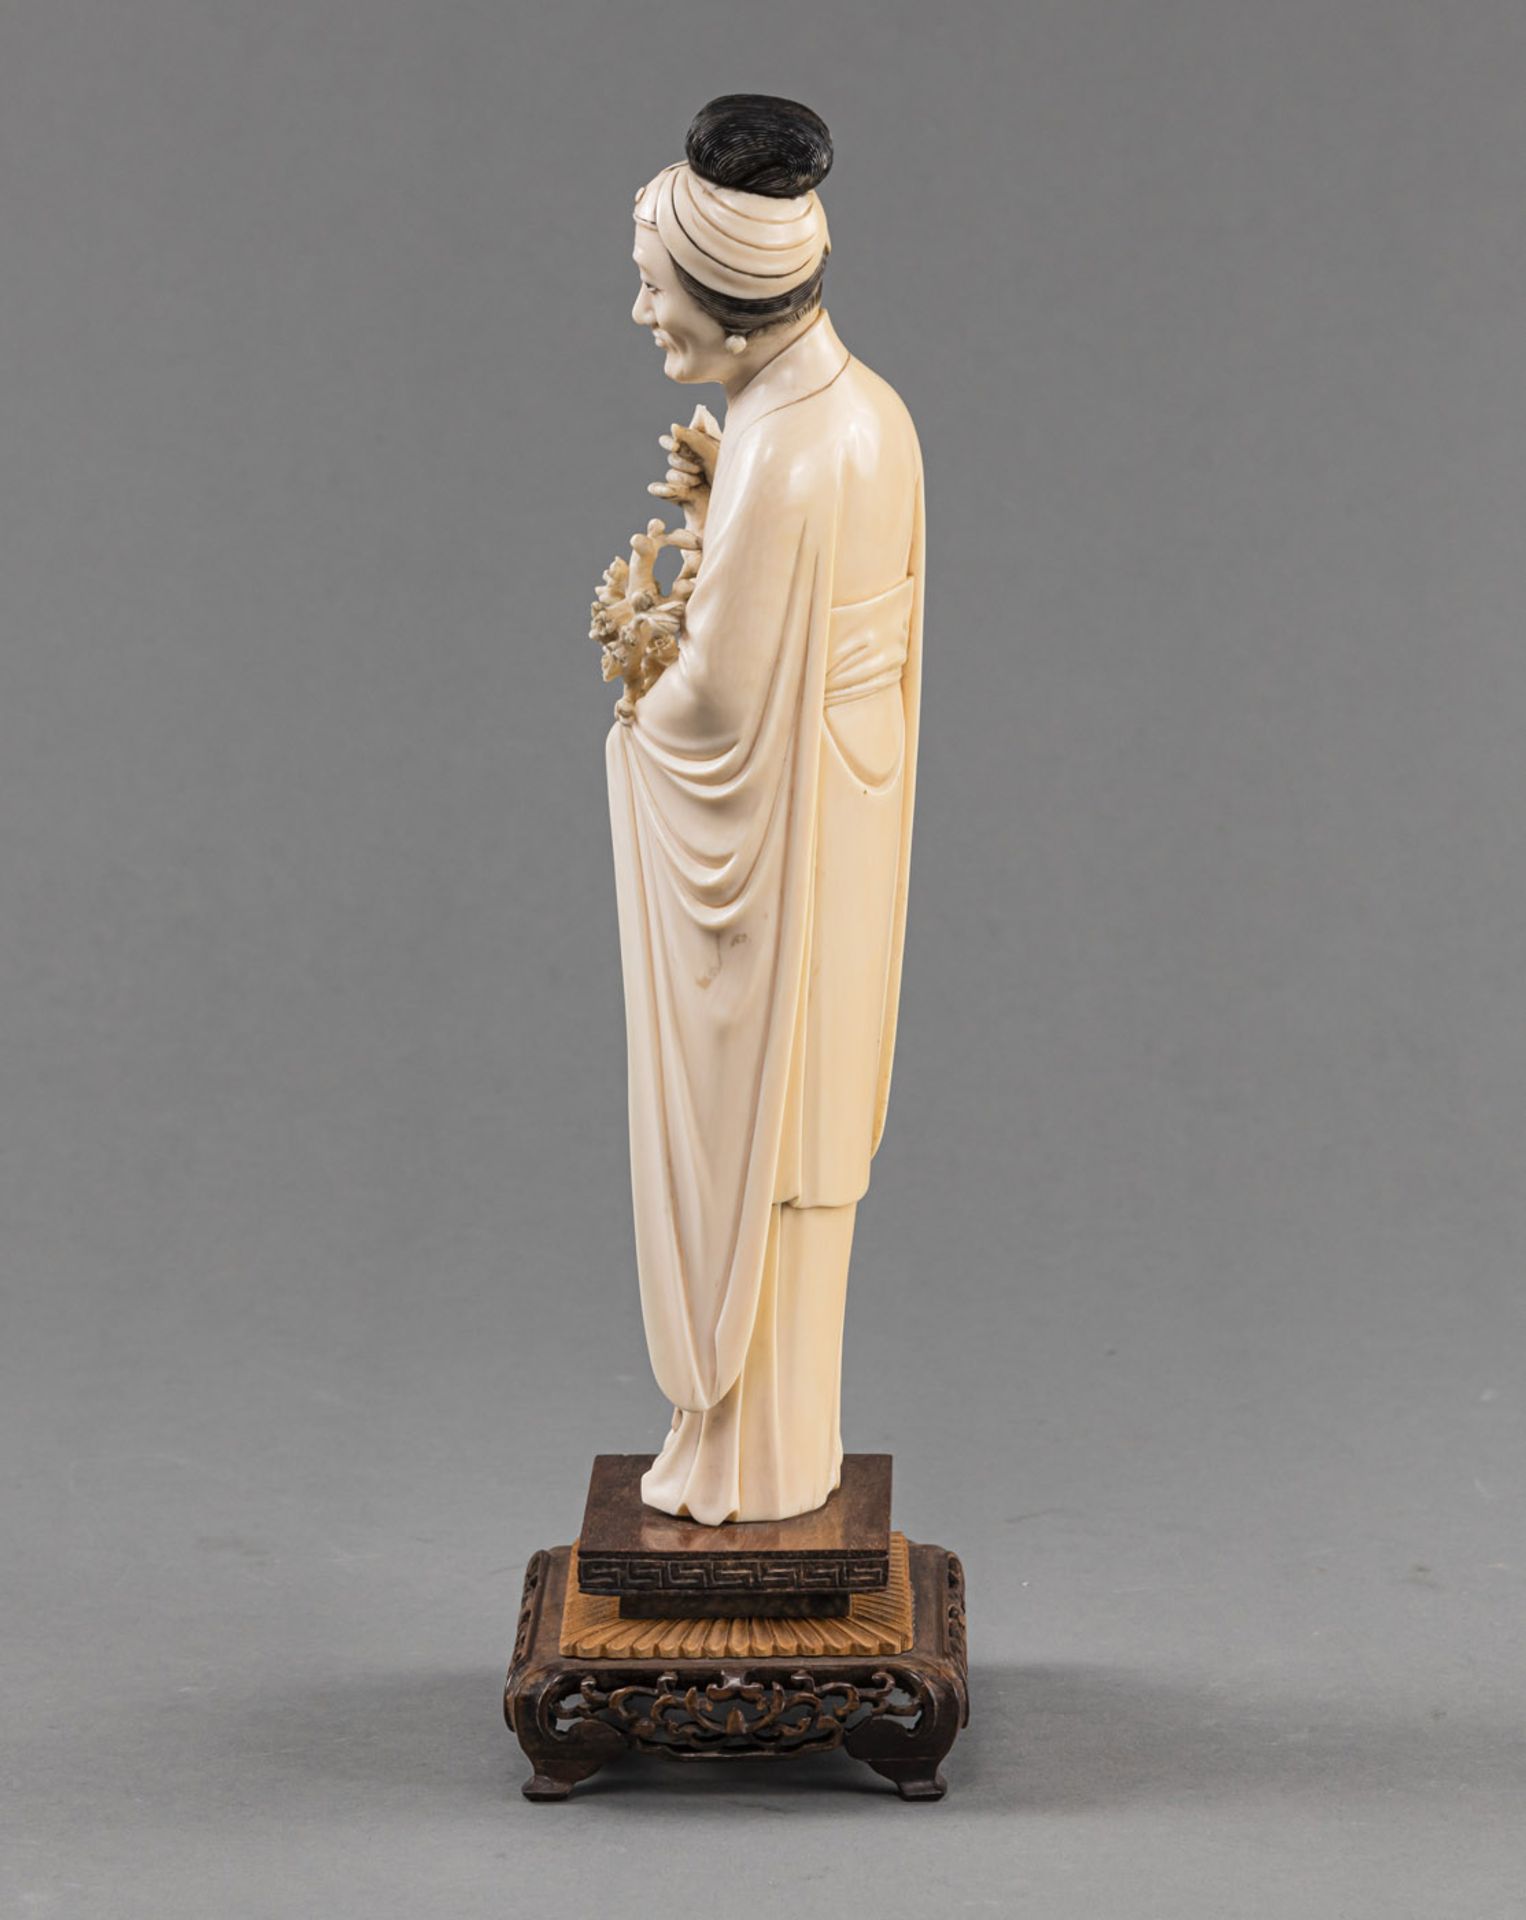 Stehende Elfenbein-Figur einer älteren Dame in langem Gewand mit Gehstock und Pflaumenblütenzweig, - Bild 4 aus 5